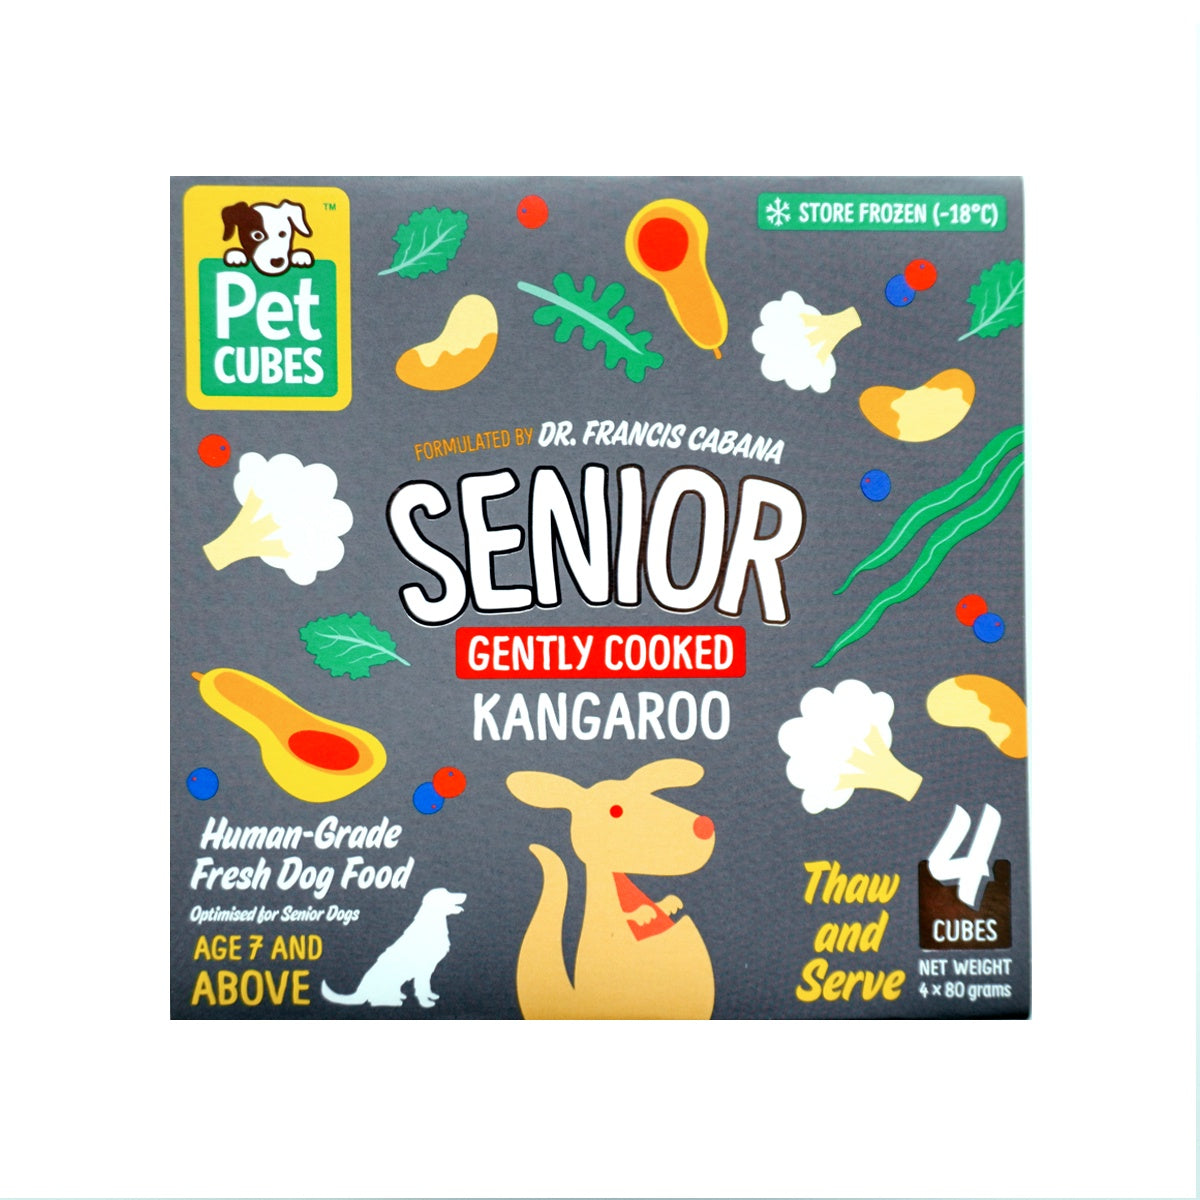 Kangaroo - senior